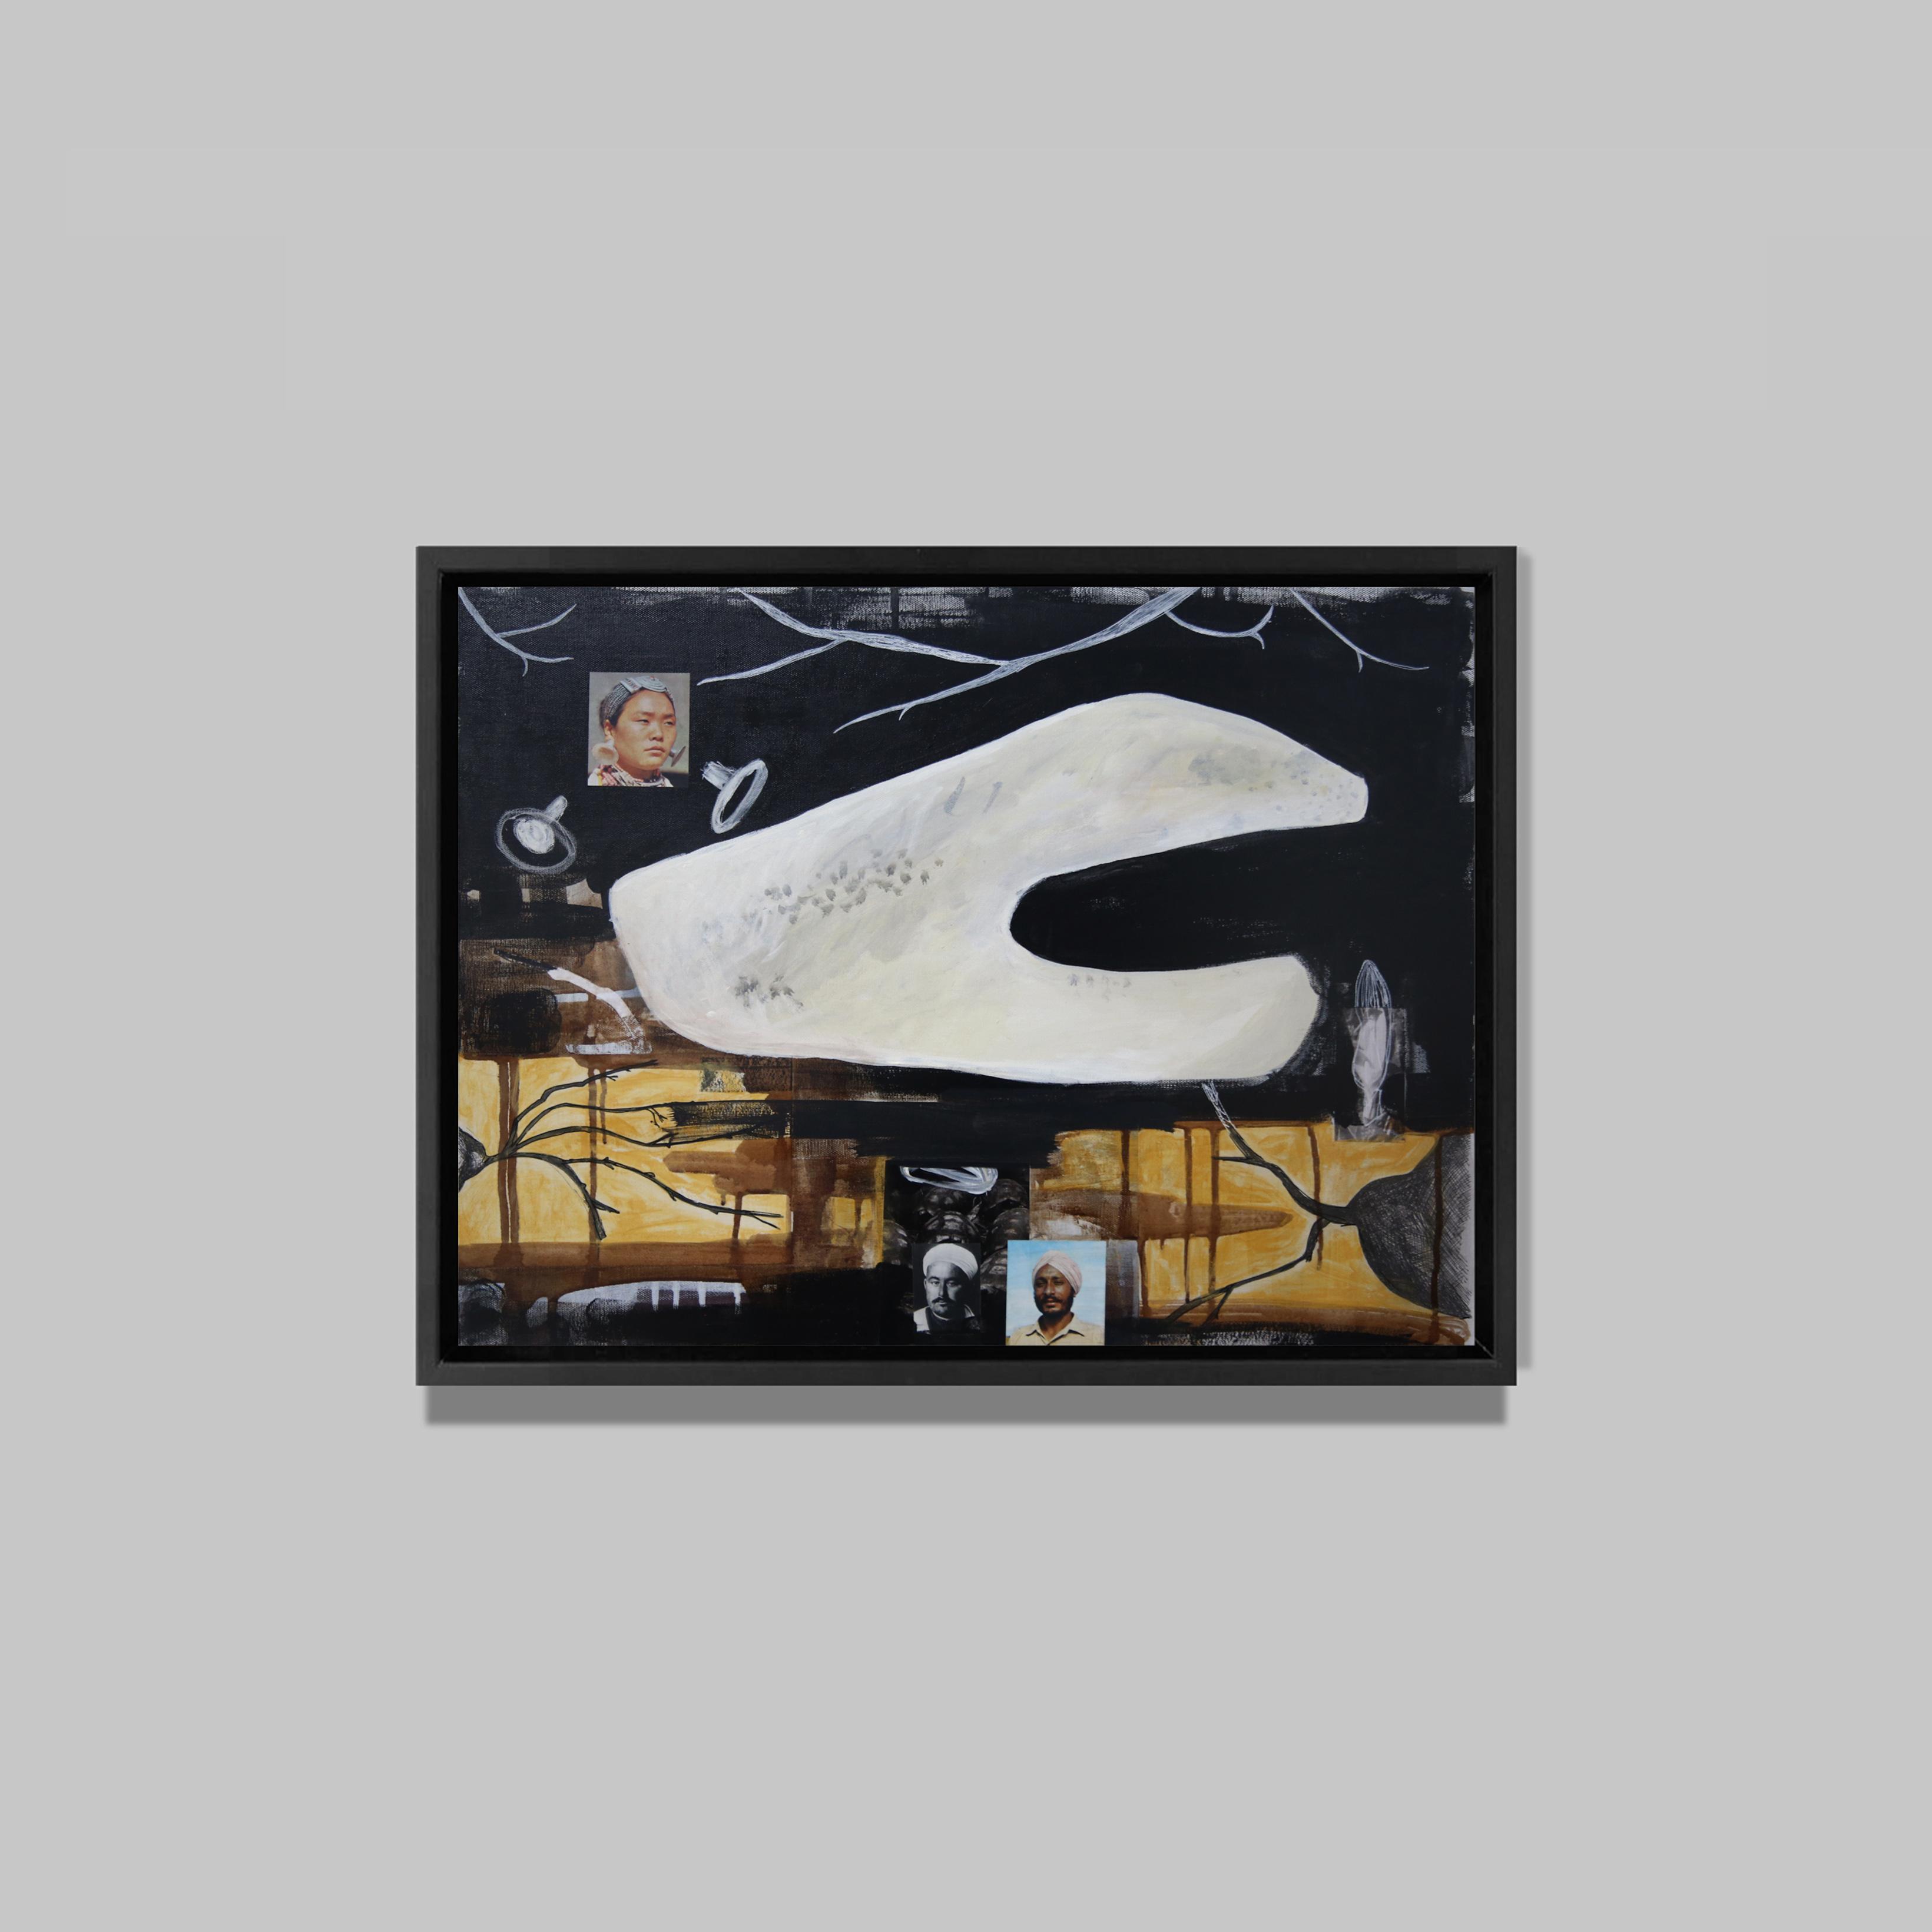 Le feu du dedans II, 2015
Acrylique et collages sur toile
50 x 60 cm